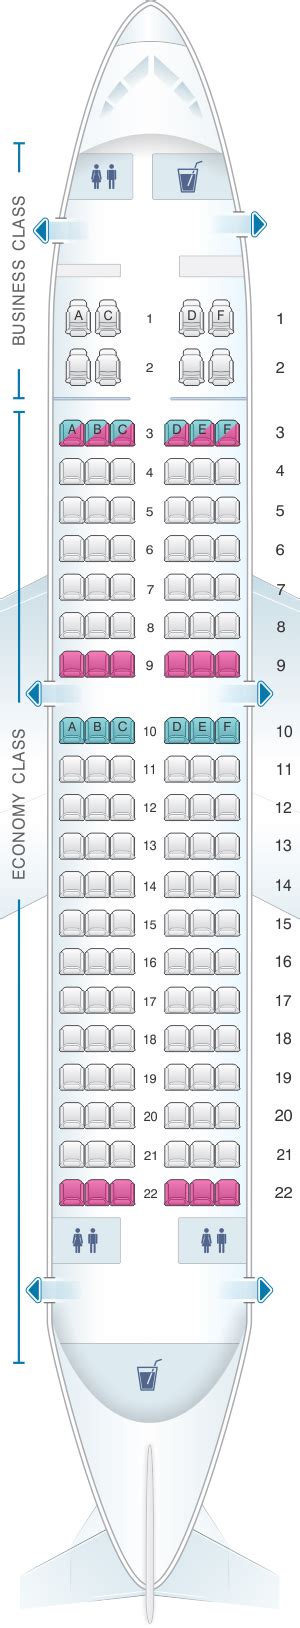 boeing 737-700 seating plan virgin australia